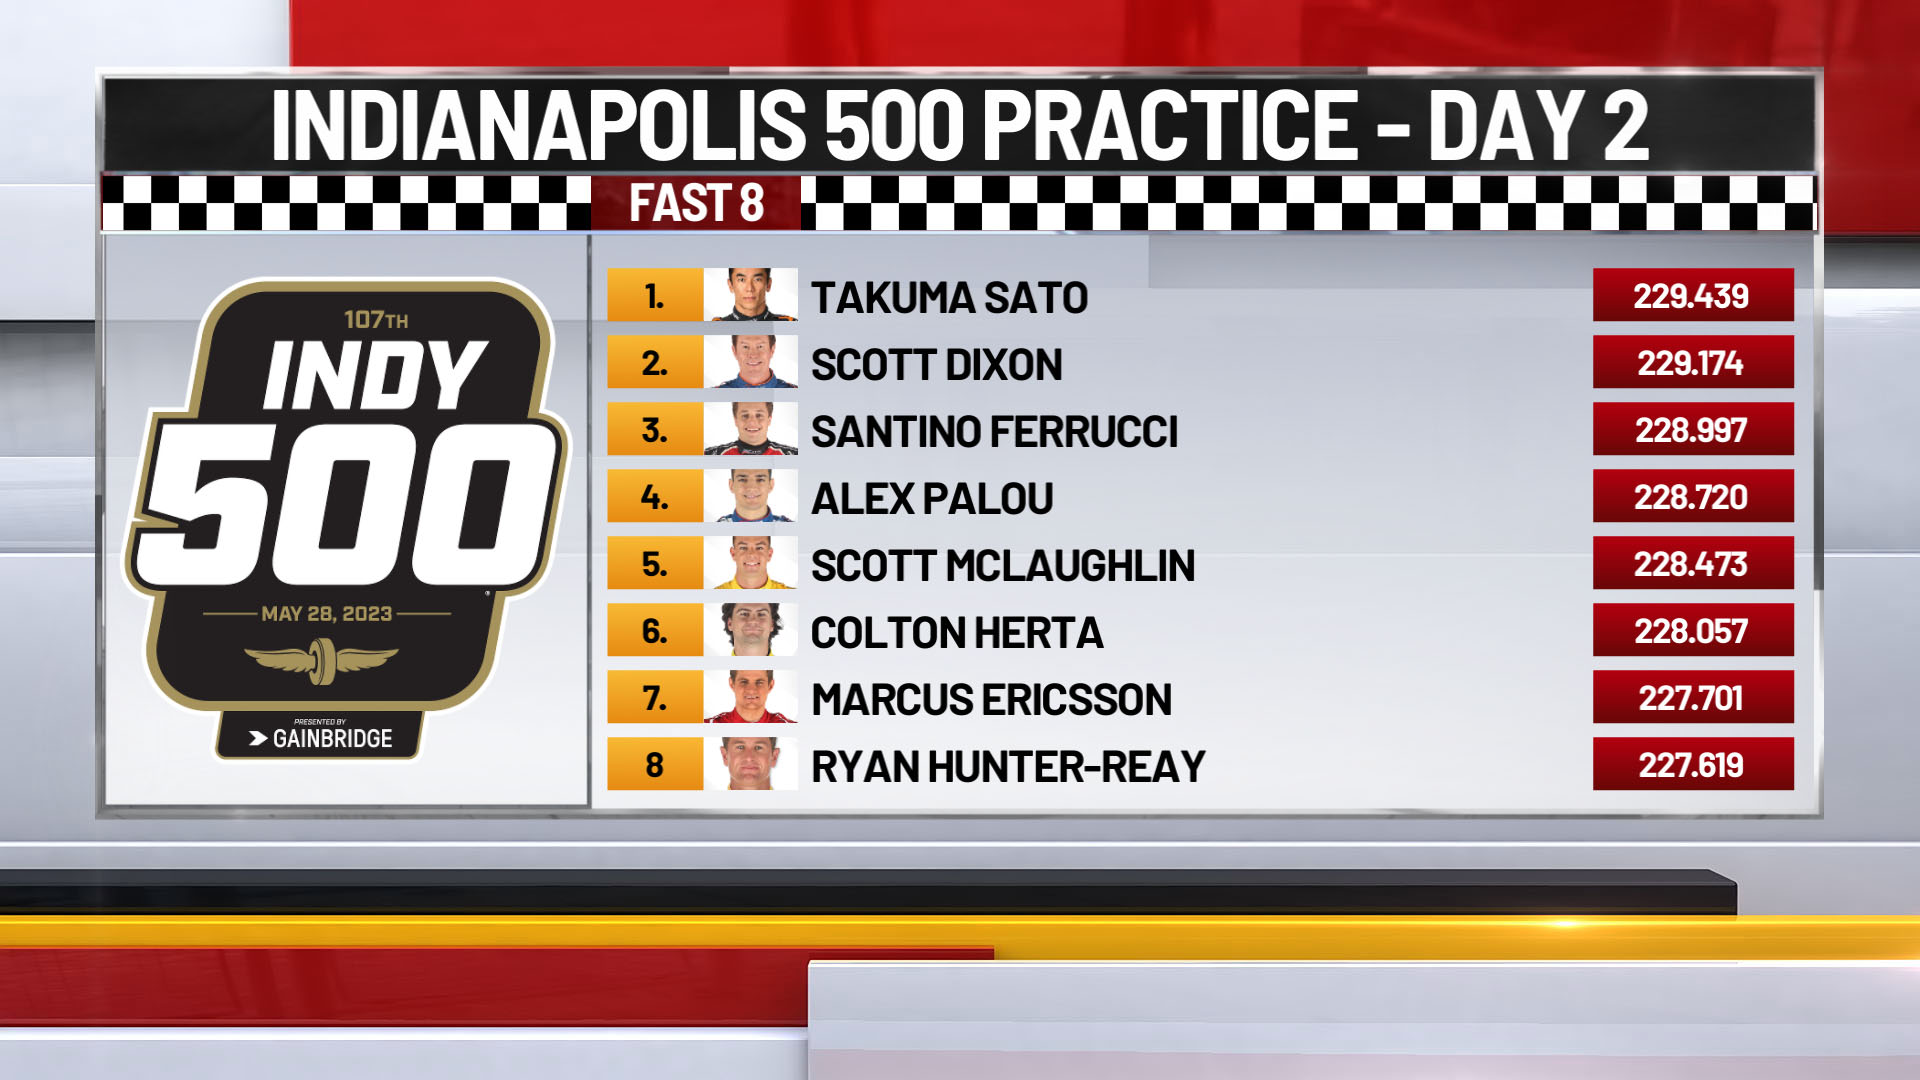 Sato, Dixon put Ganassi team atop speed chart in 1st Indianapolis 500